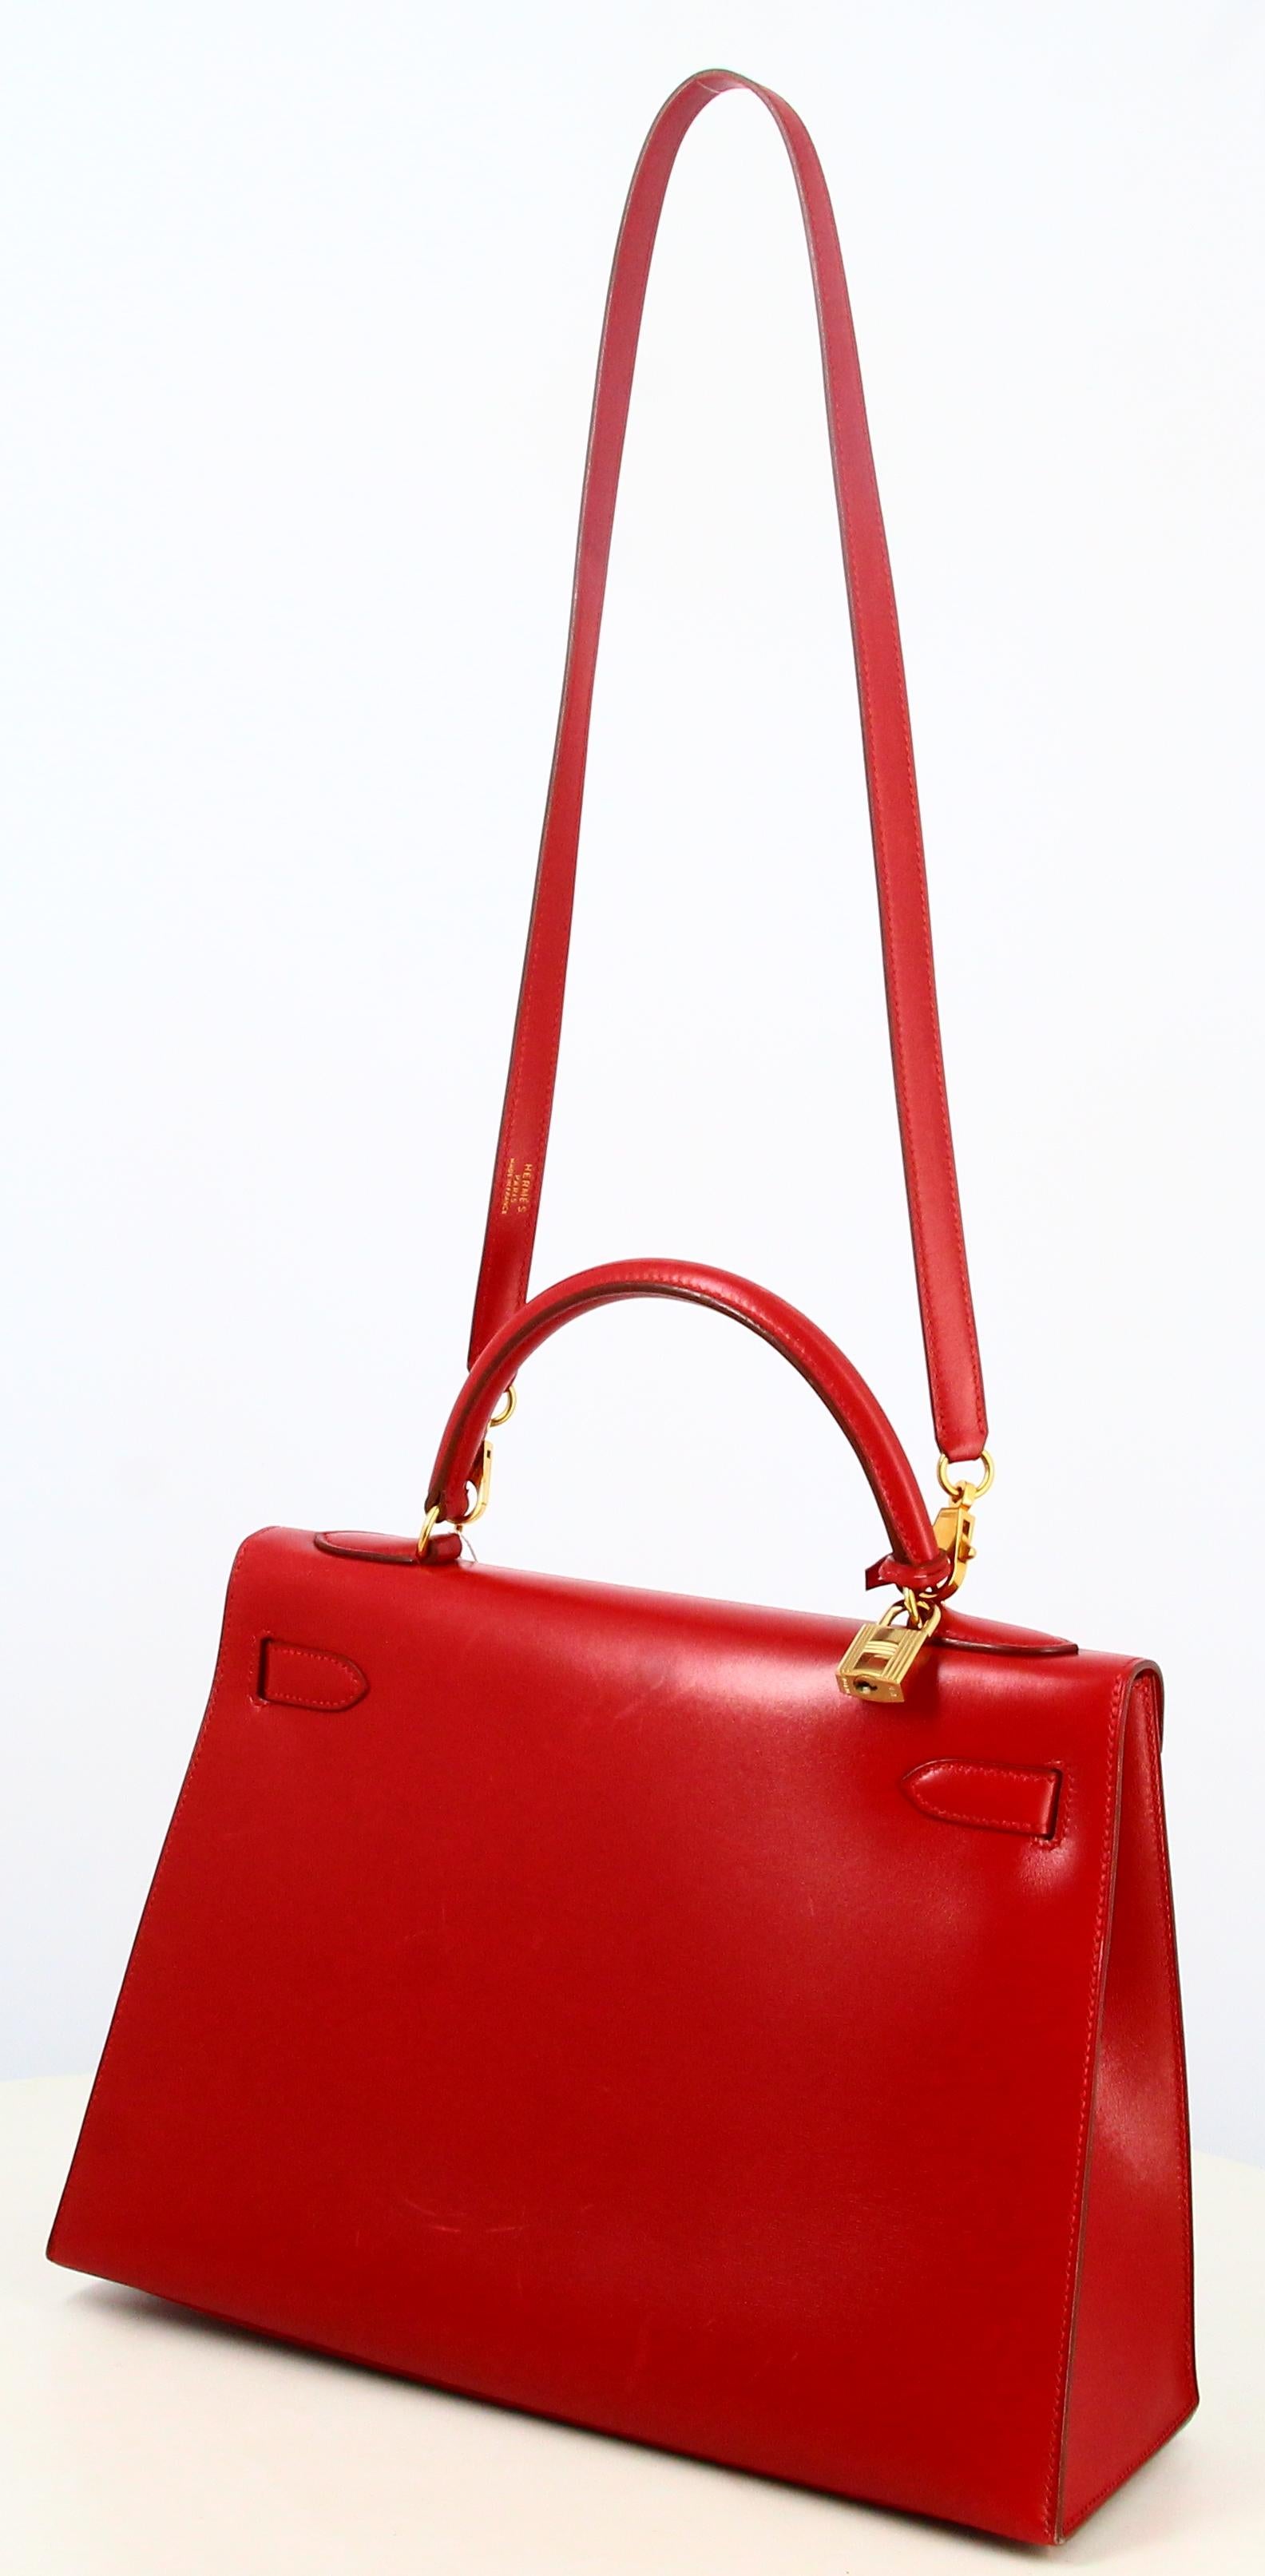 1983 Hermes Kelly Handbag Red Leather  For Sale 1